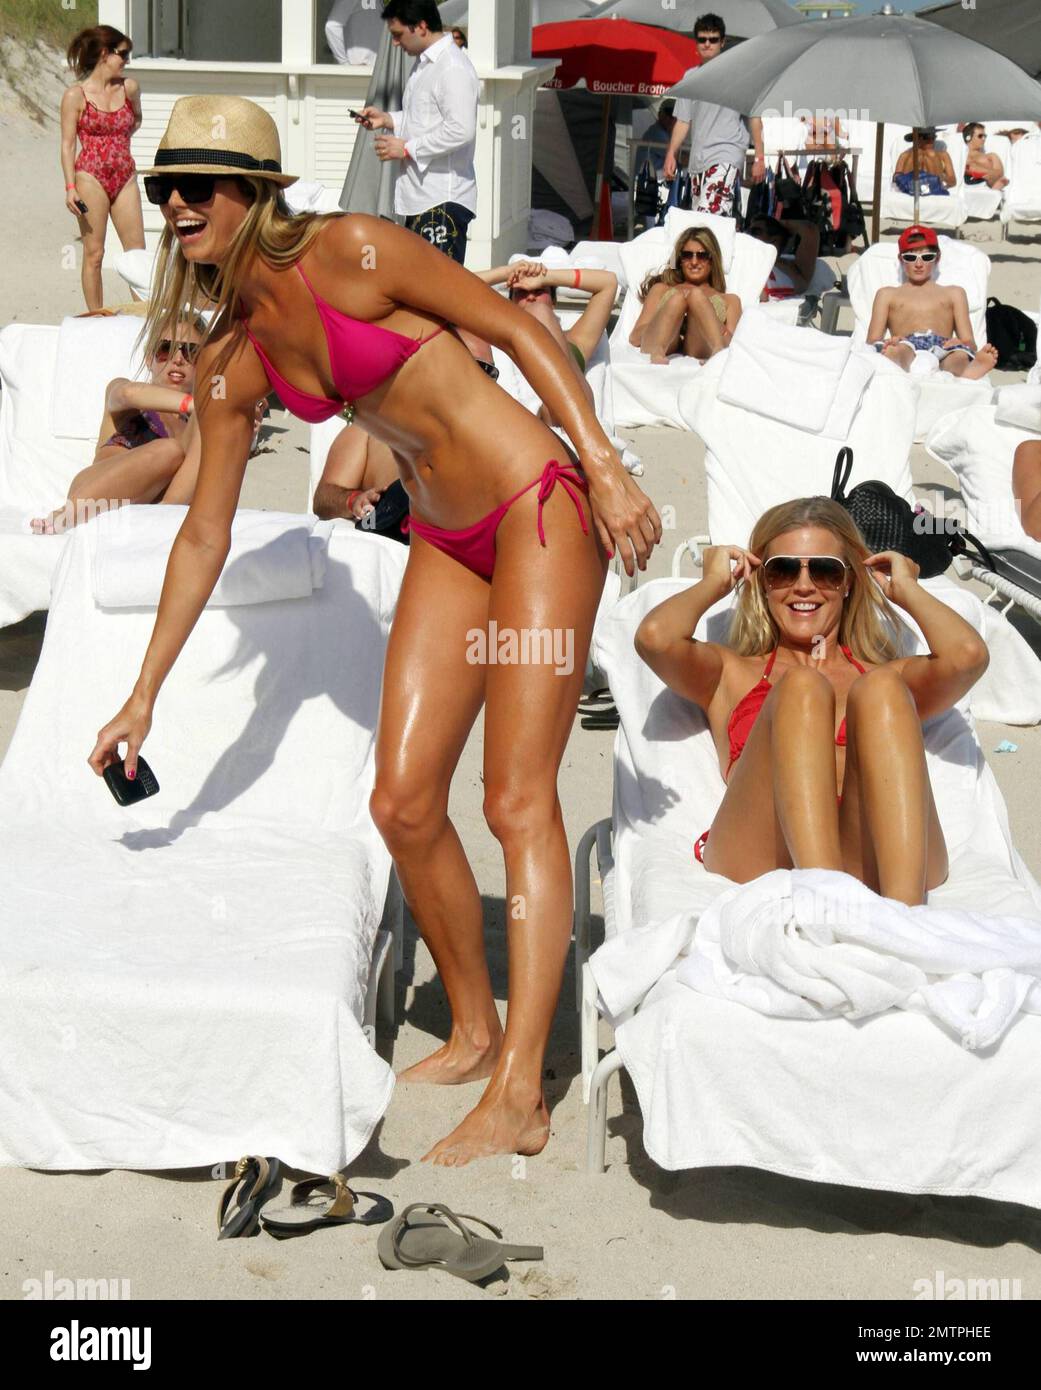 Stacy Keibler fait la fête dans un petit bikini rose chaud sur la plage de  son hôtel de luxe, le Fontainebleau Miami Beach, avant de se délasser au  bord de la piscine